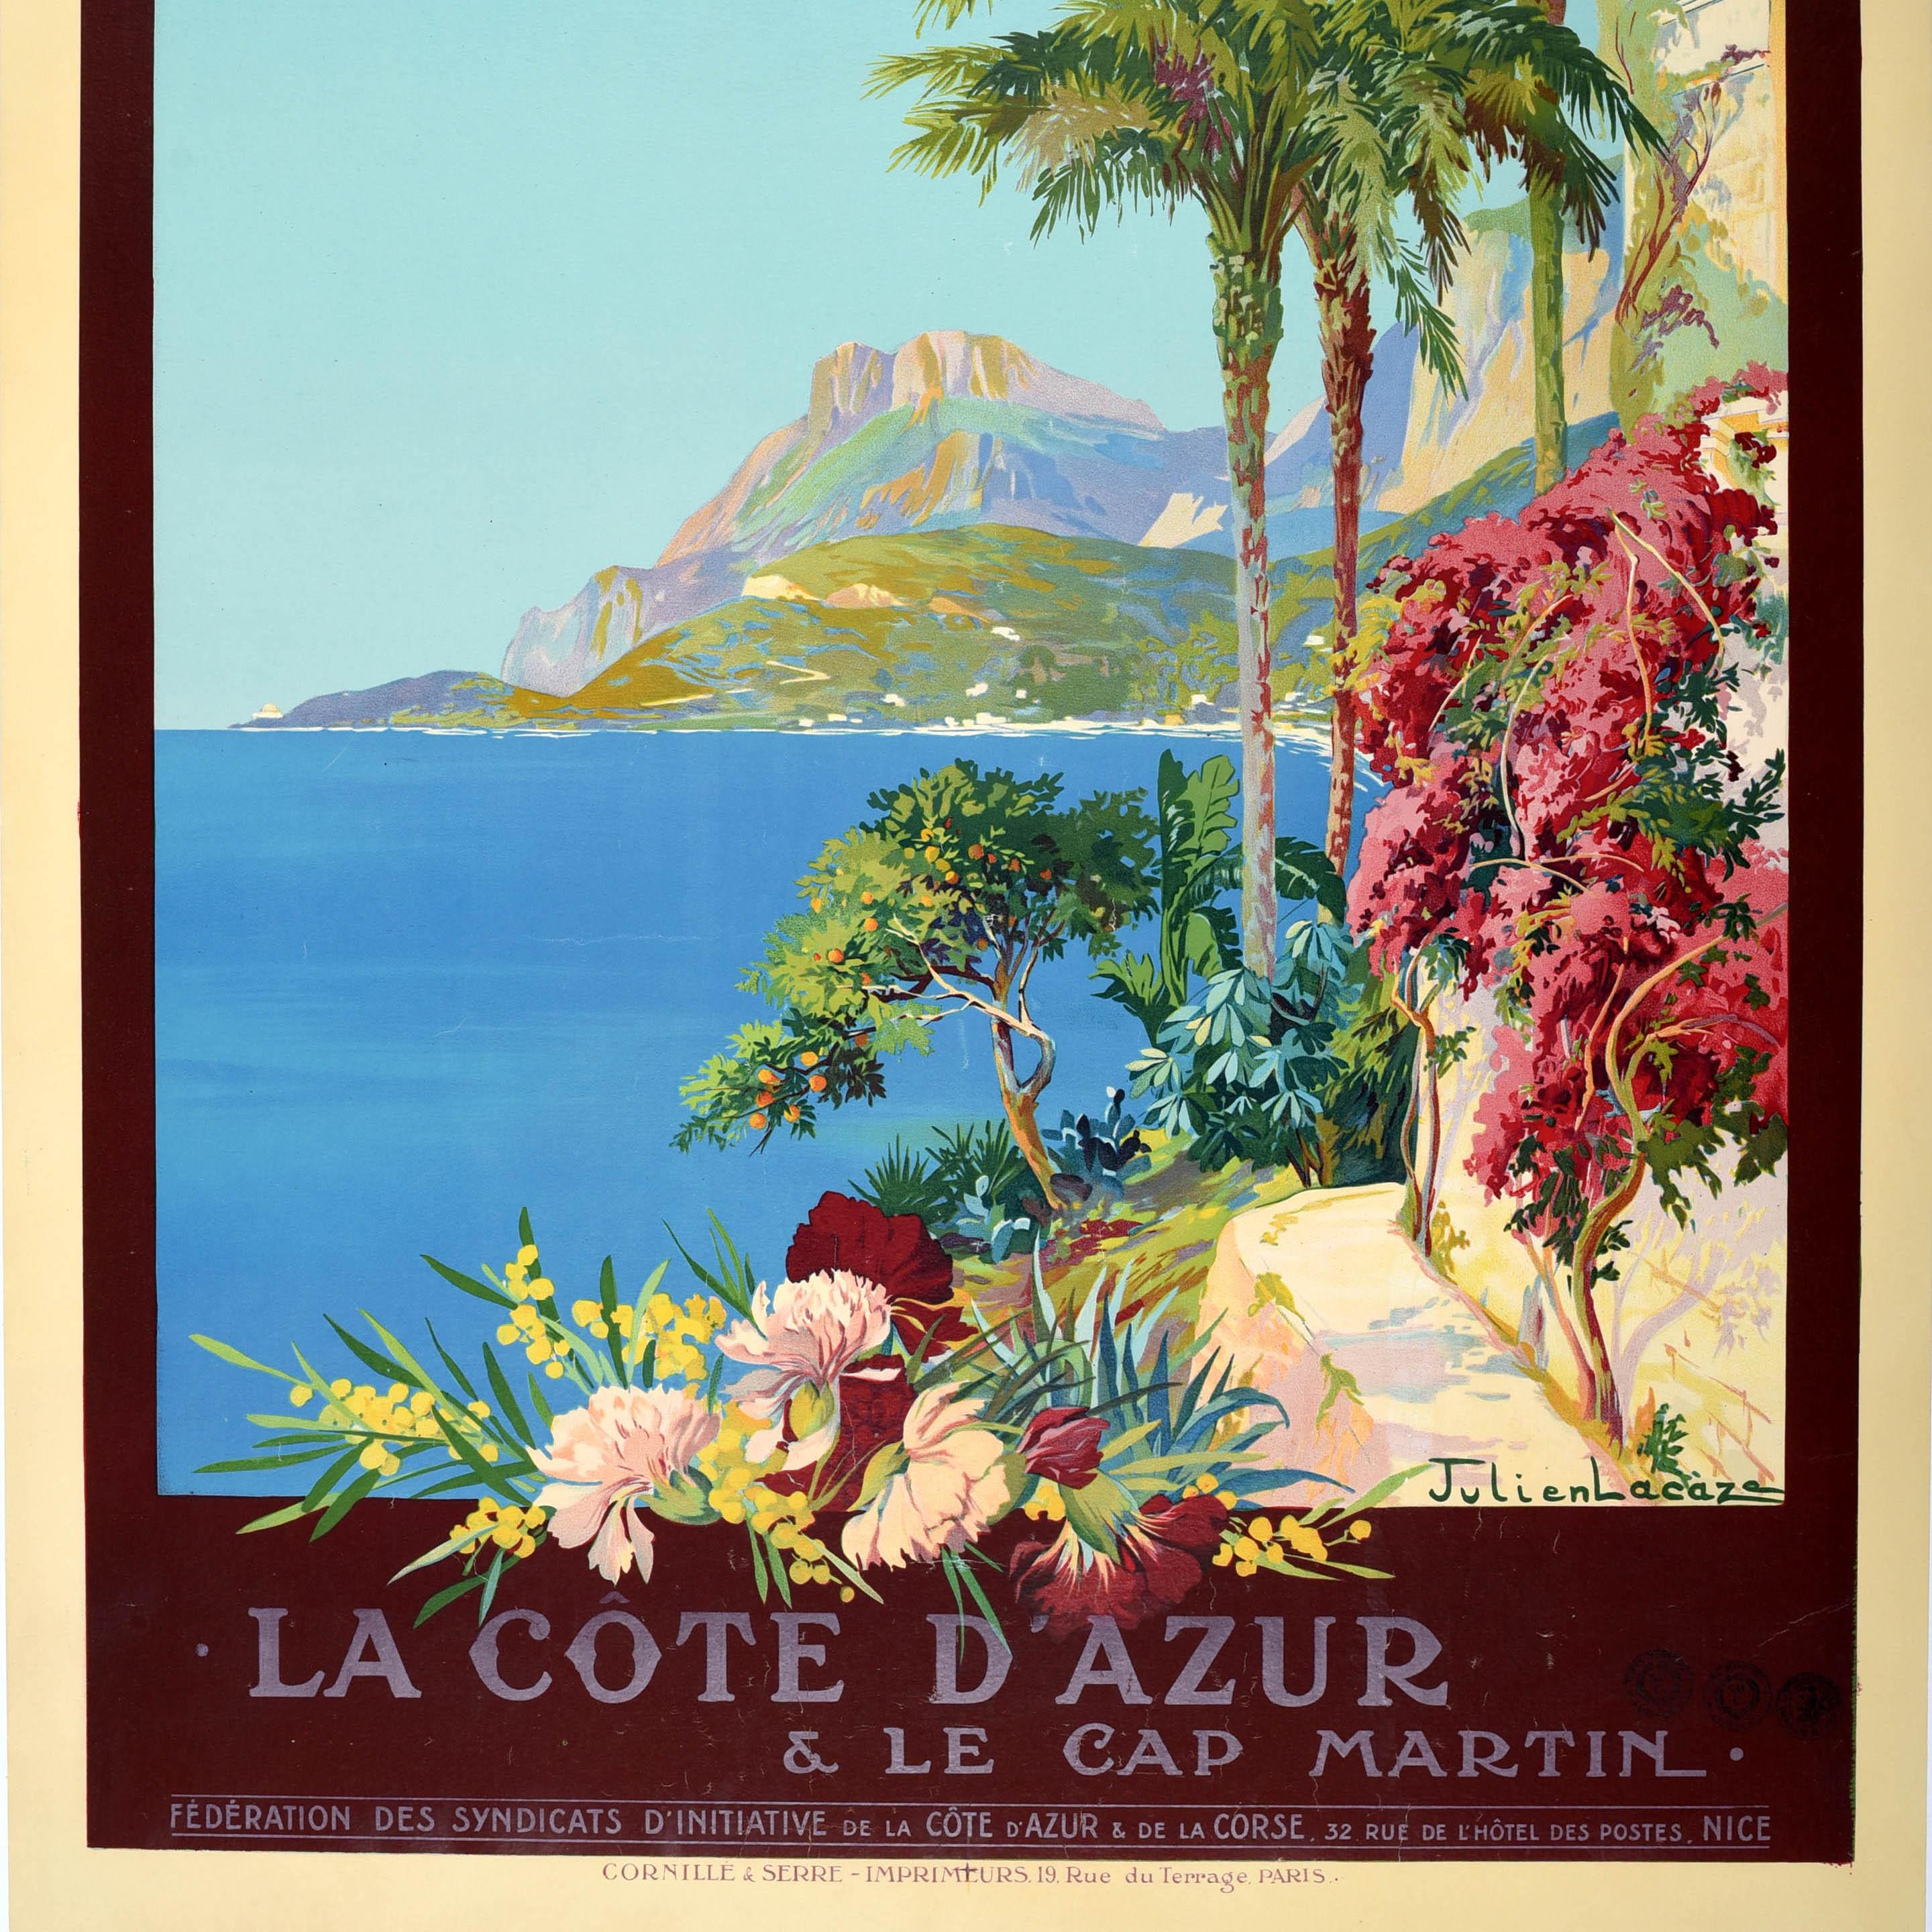 Originales antikes Reiseplakat für La Cote D'Azur & Le Cap Martin, herausgegeben von der PLM Paris Lyon Mediterranee Railway, mit einer malerischen Küstenansicht des Landschaftsmalers Julien Lacaze (1886-1971), die die Côte d'Azur mit farbenfrohen